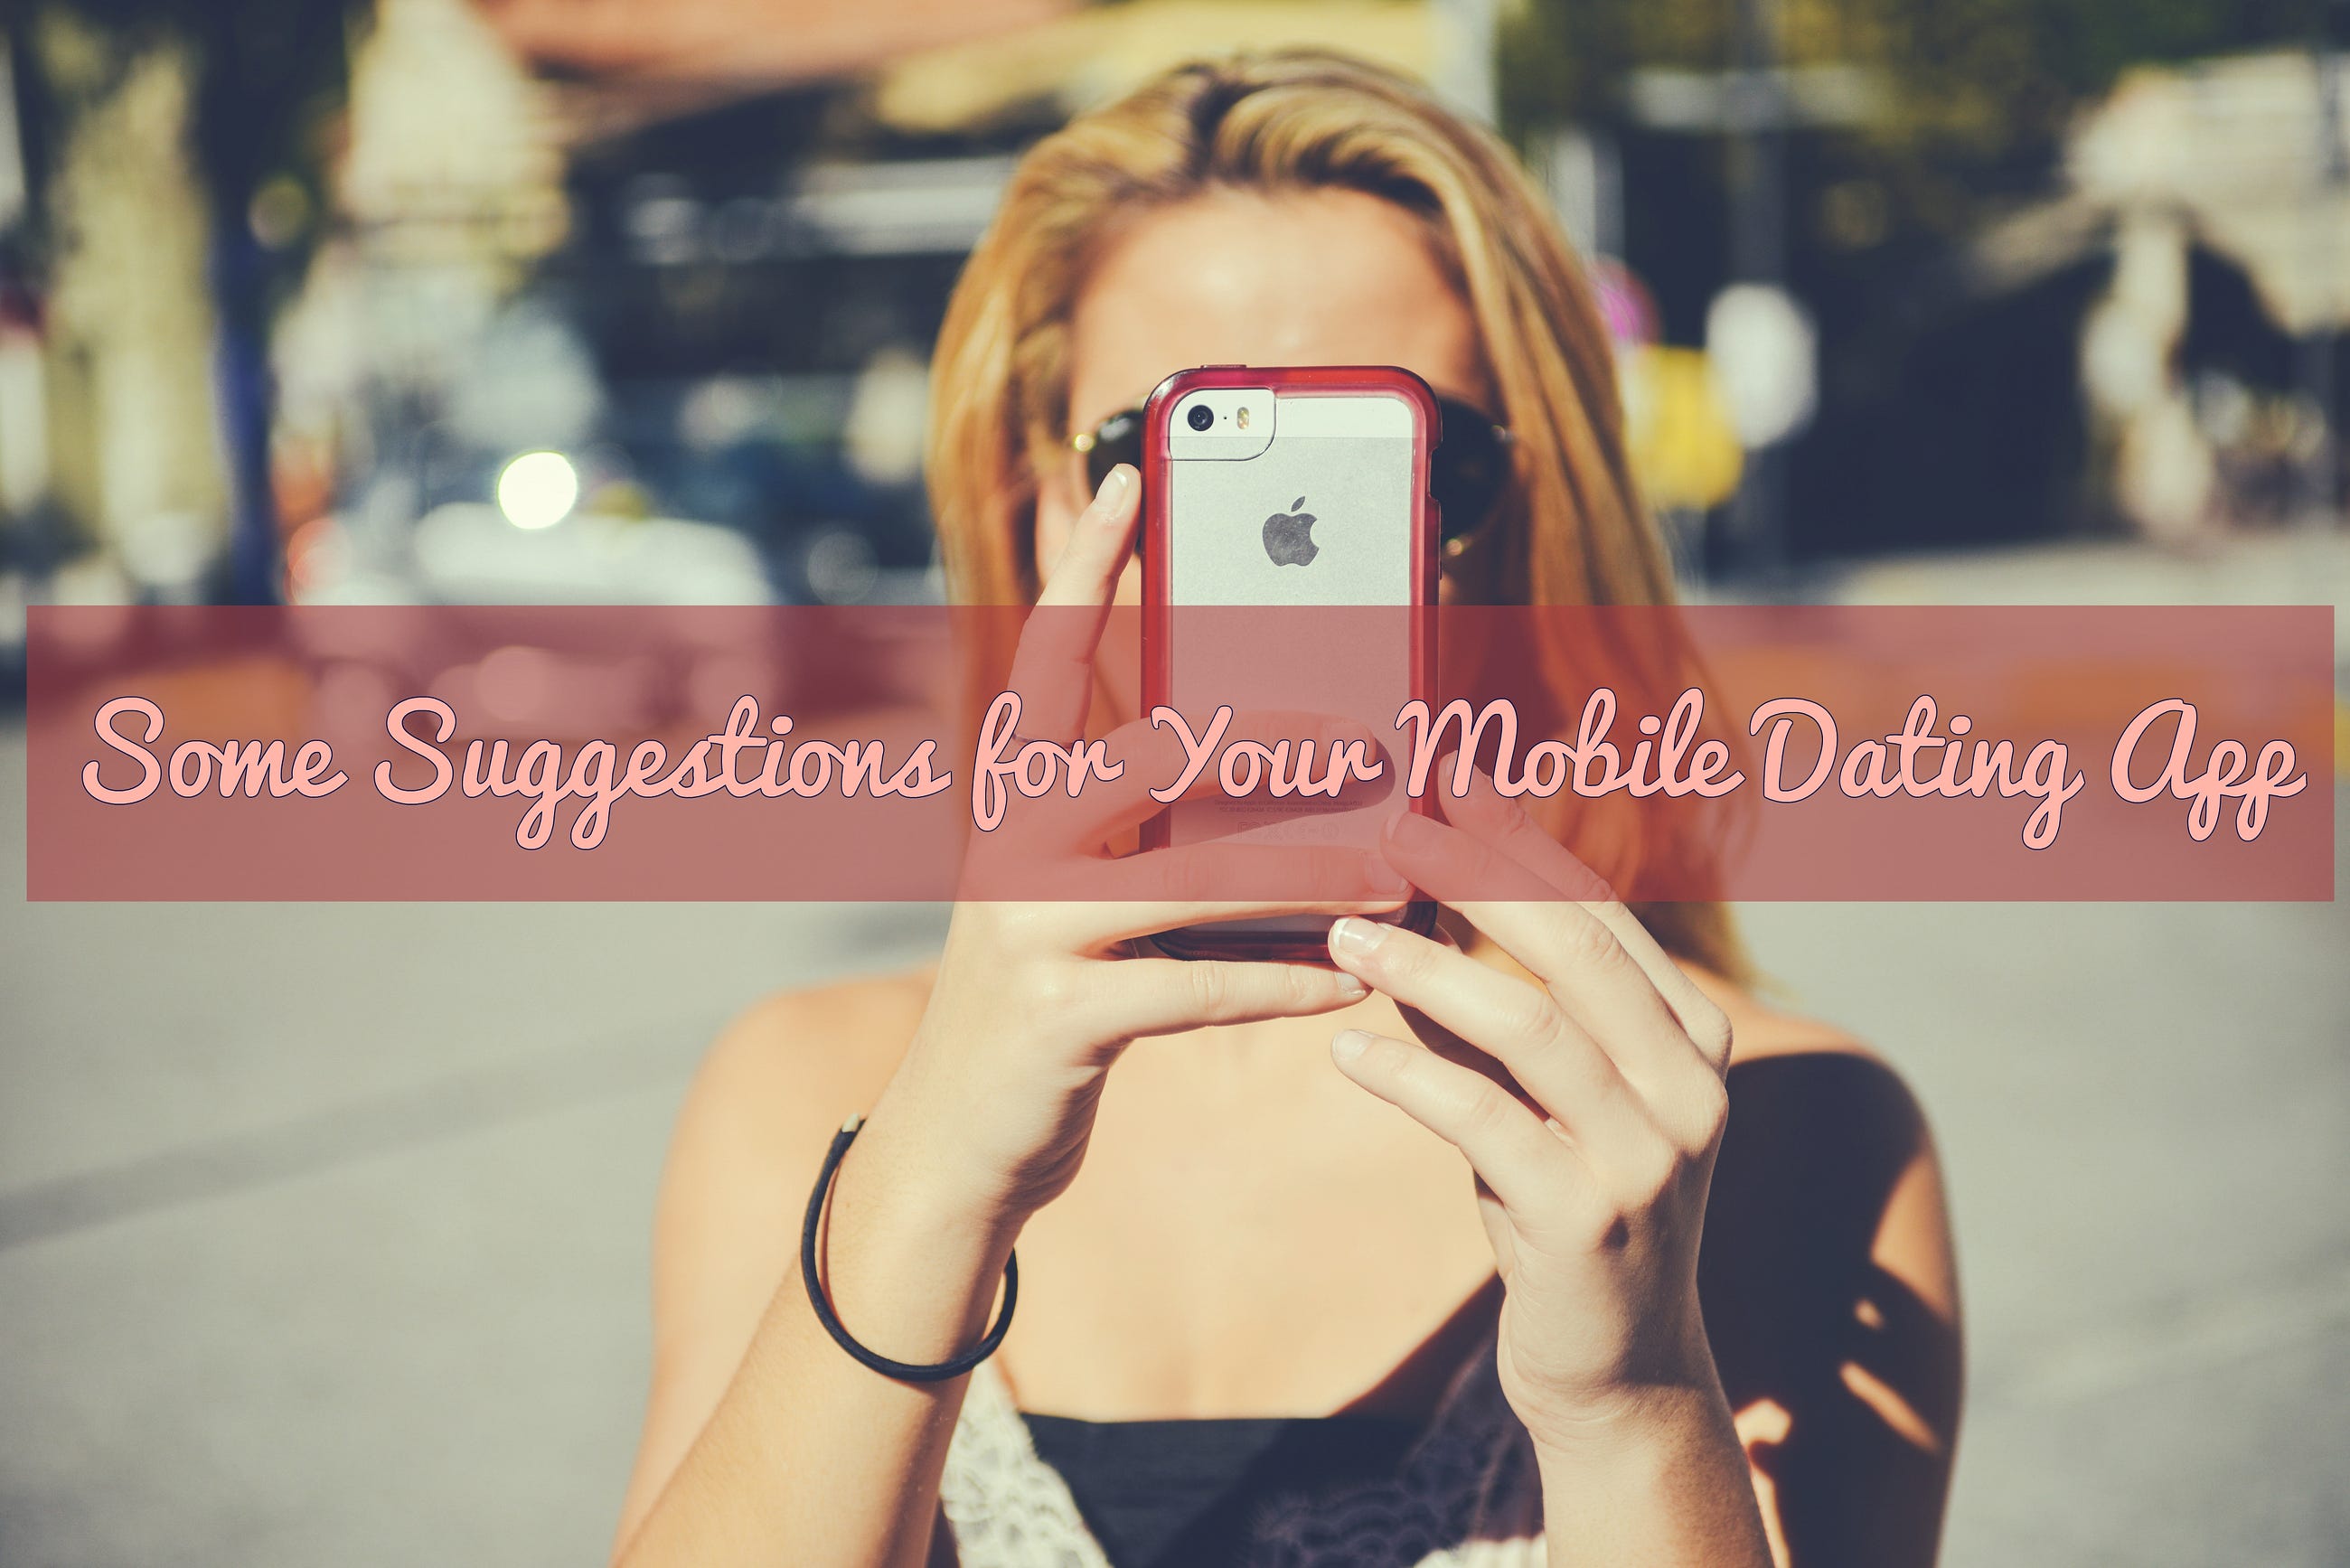 miglior mobile dating app 2016 risalente 6 mesi e non ti amo